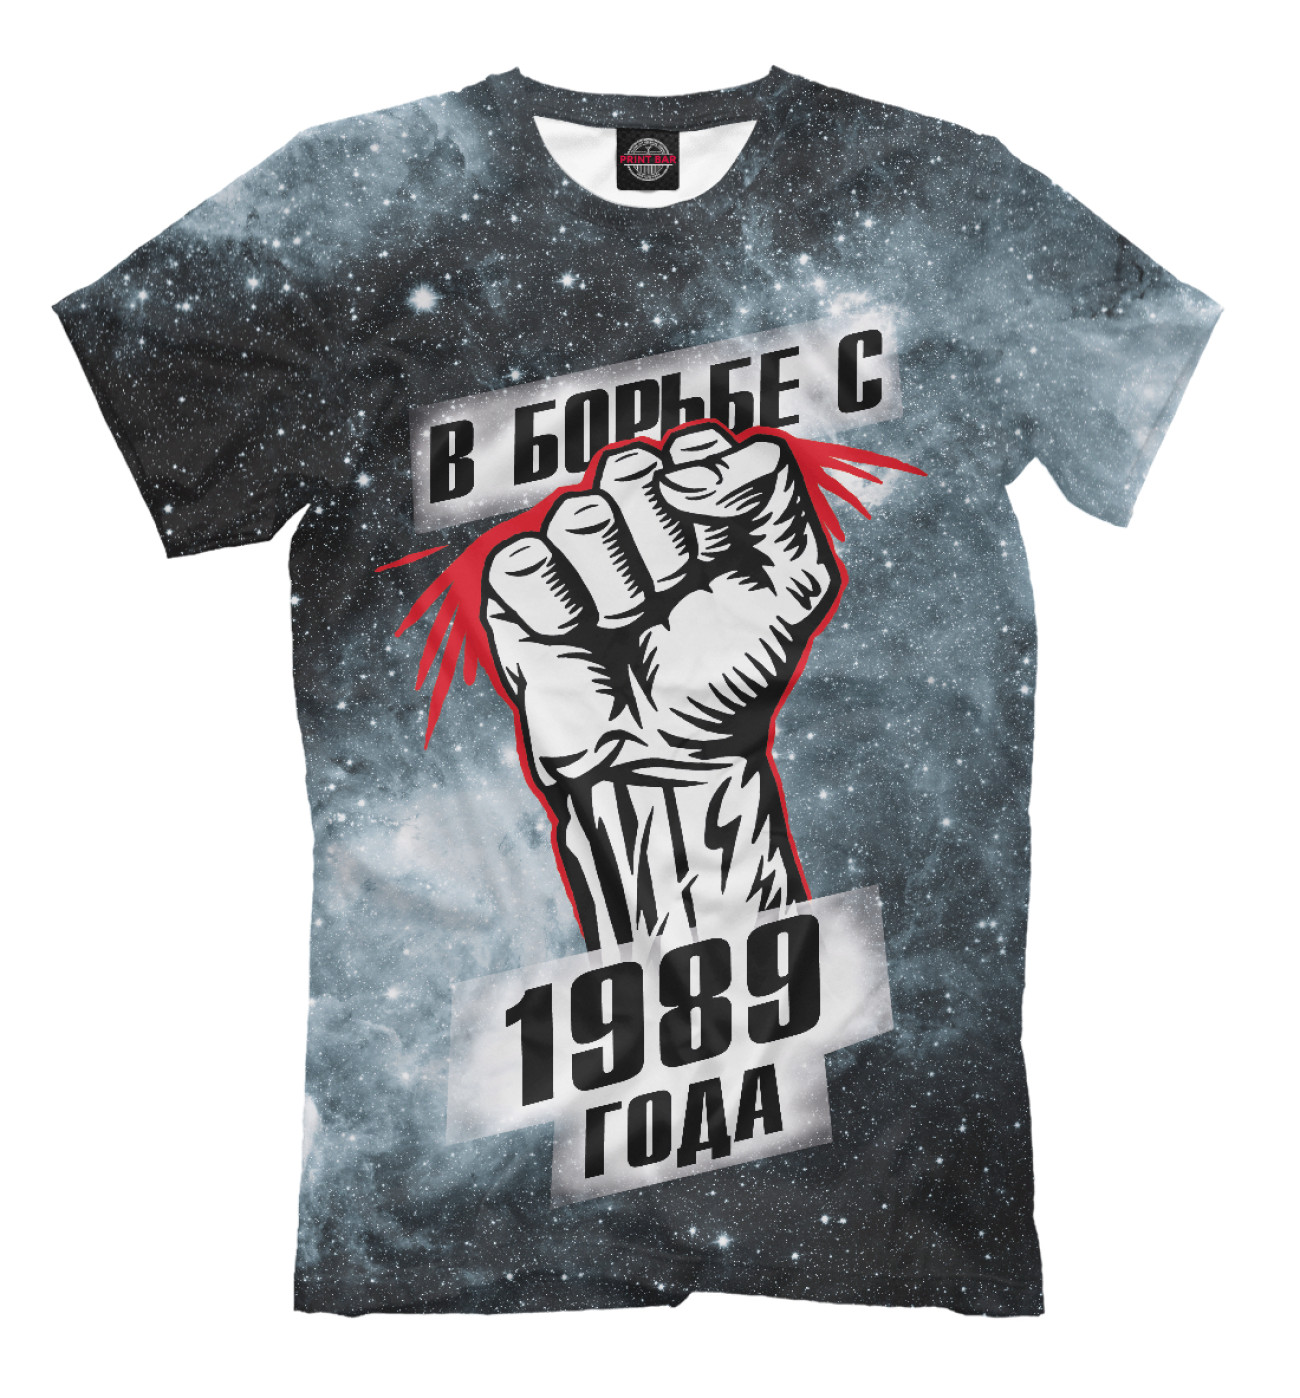 Мужская Футболка В борьбе с 1989 года, артикул: DVA-896384-fut-2